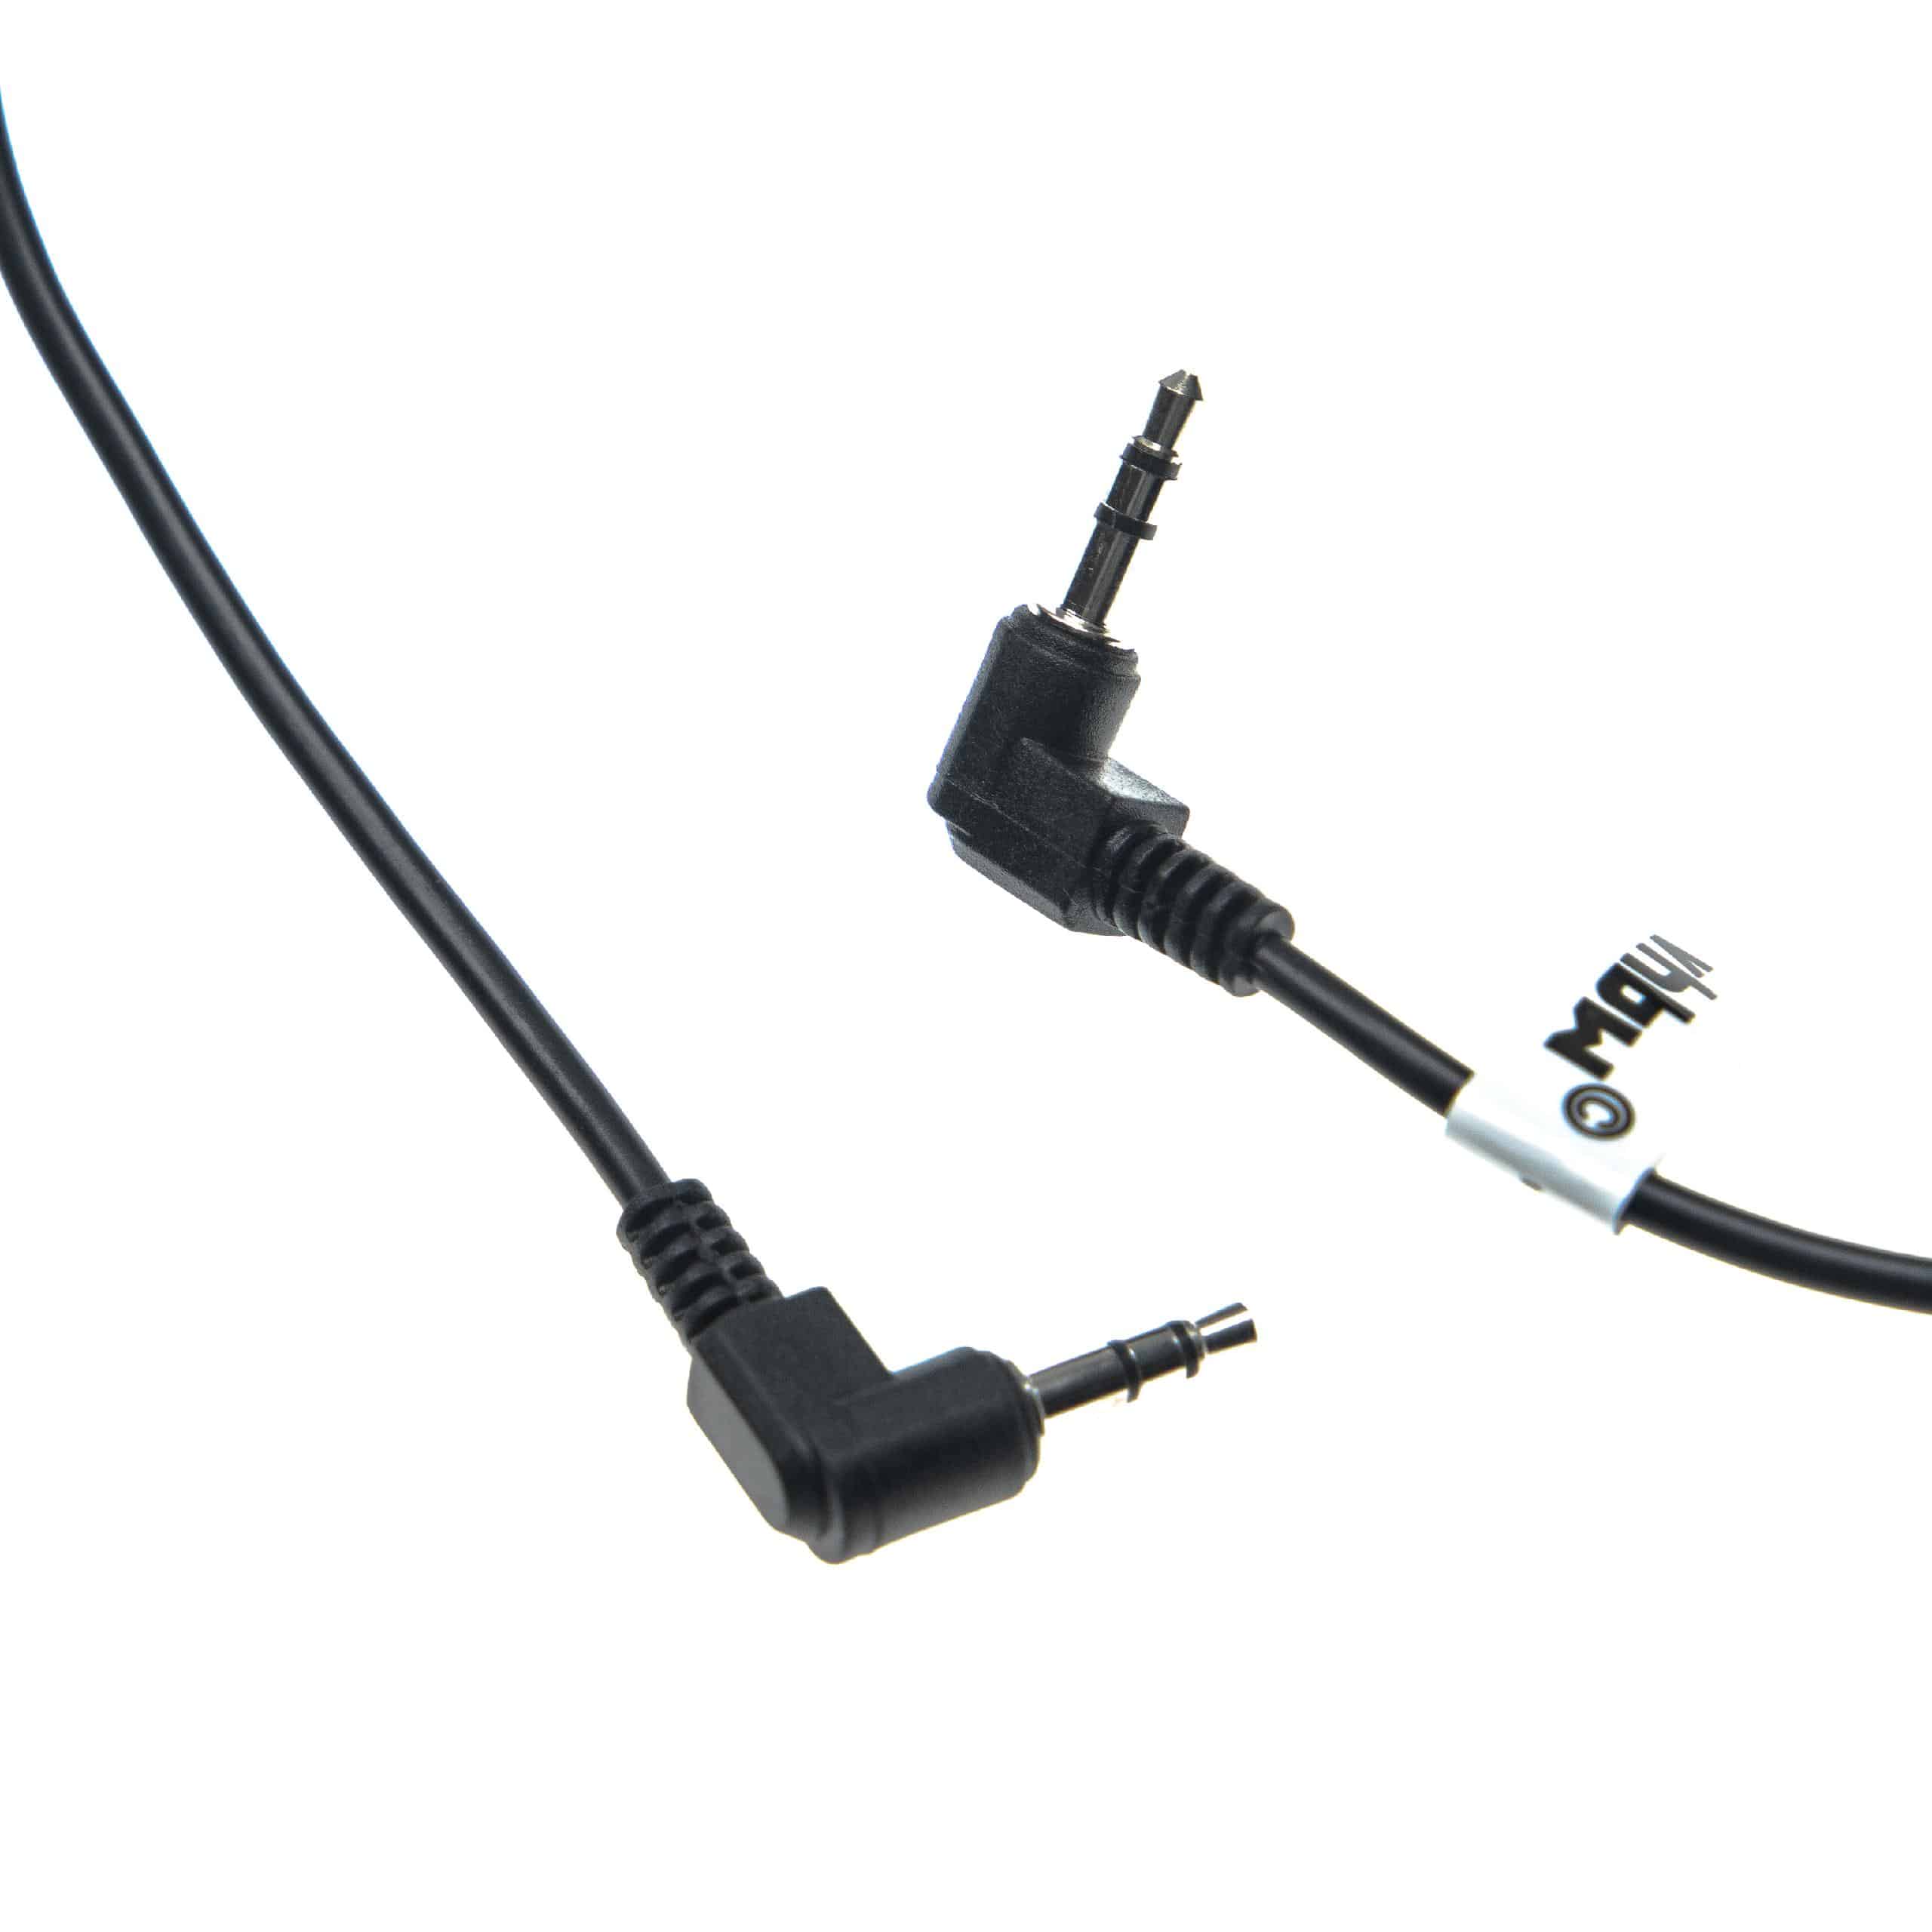 Kabel synchronizacyjny do lampy błyskowej MZ6 Pentax, Samsung, Canon MZ6 - 140 cm, spiralny